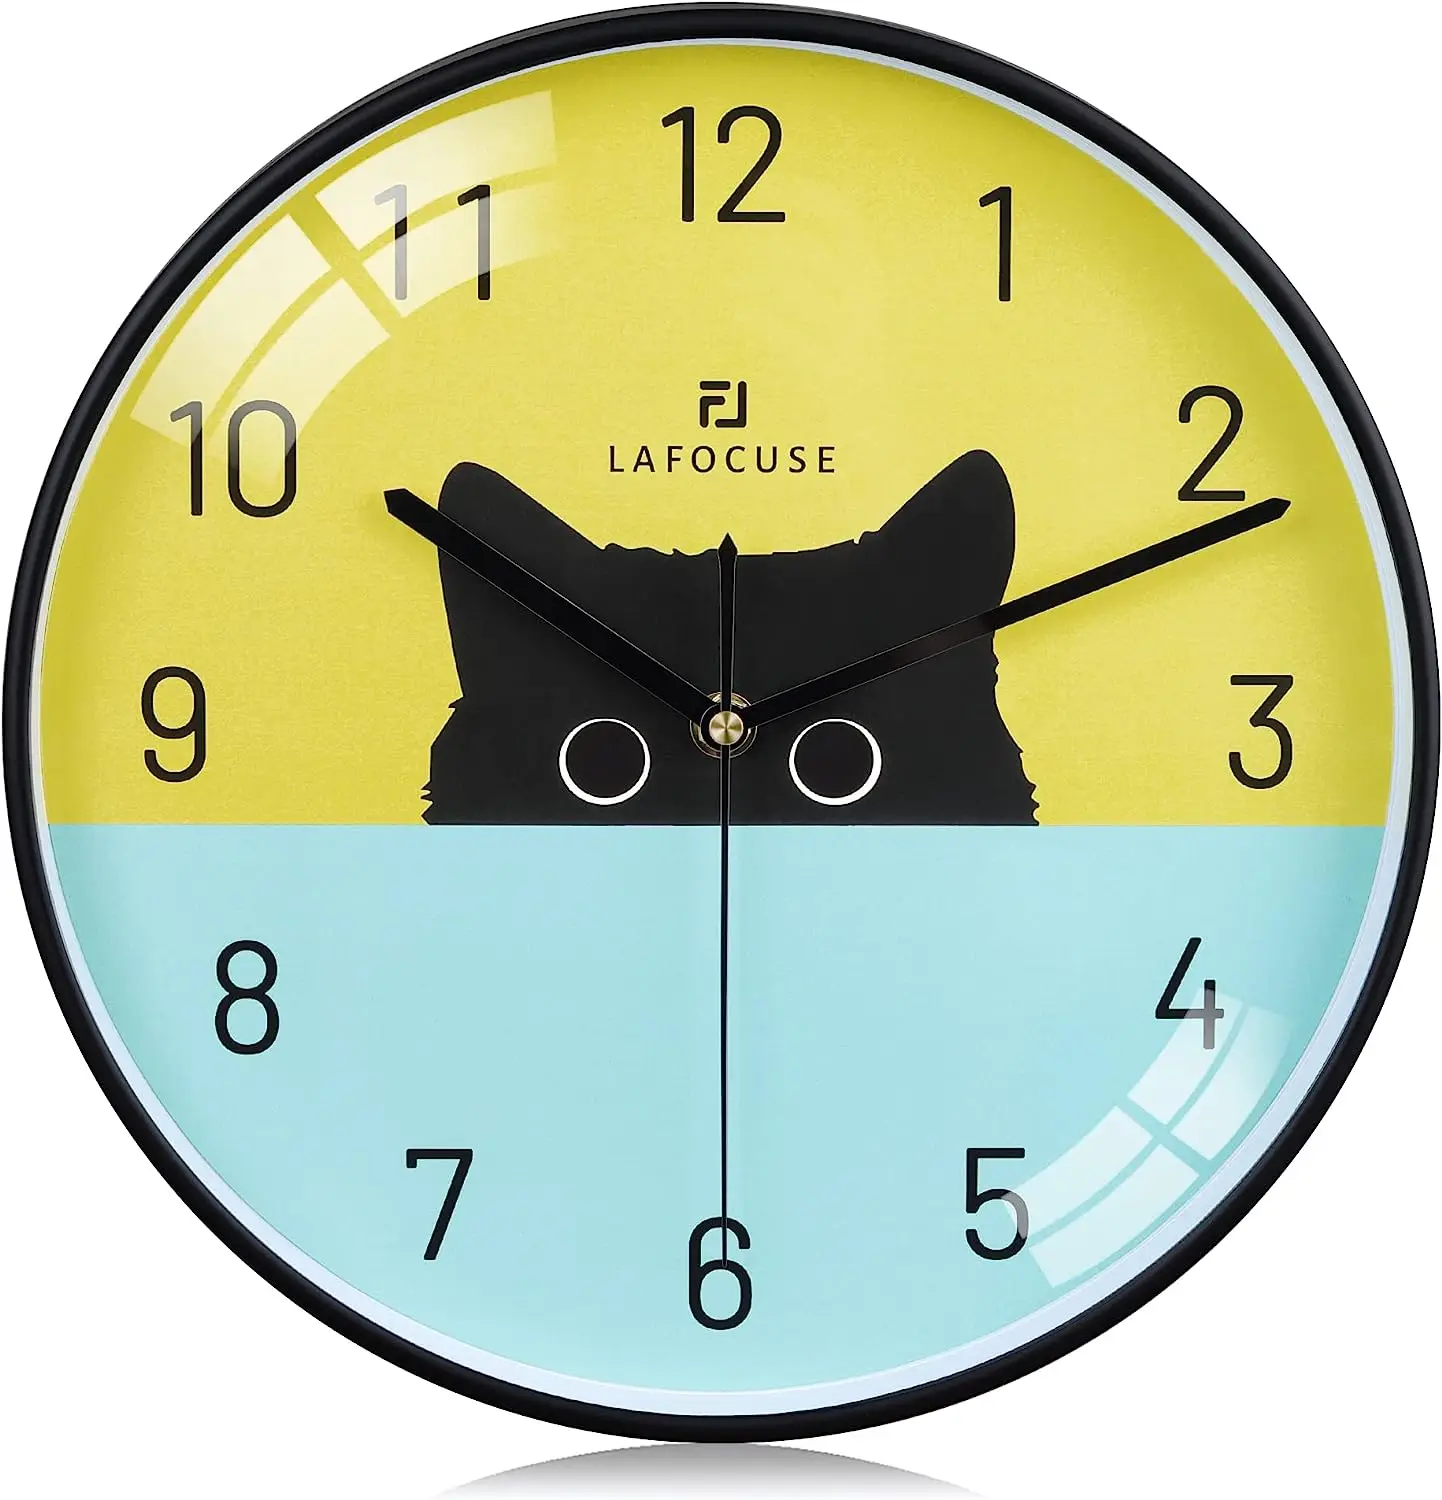 

Reloj de Pared Gato Negro Moderno Silencioso, Multicolor Reloj Fácil de Leer, Bonito Decorativo sin Tictac para Cocina Salon Do